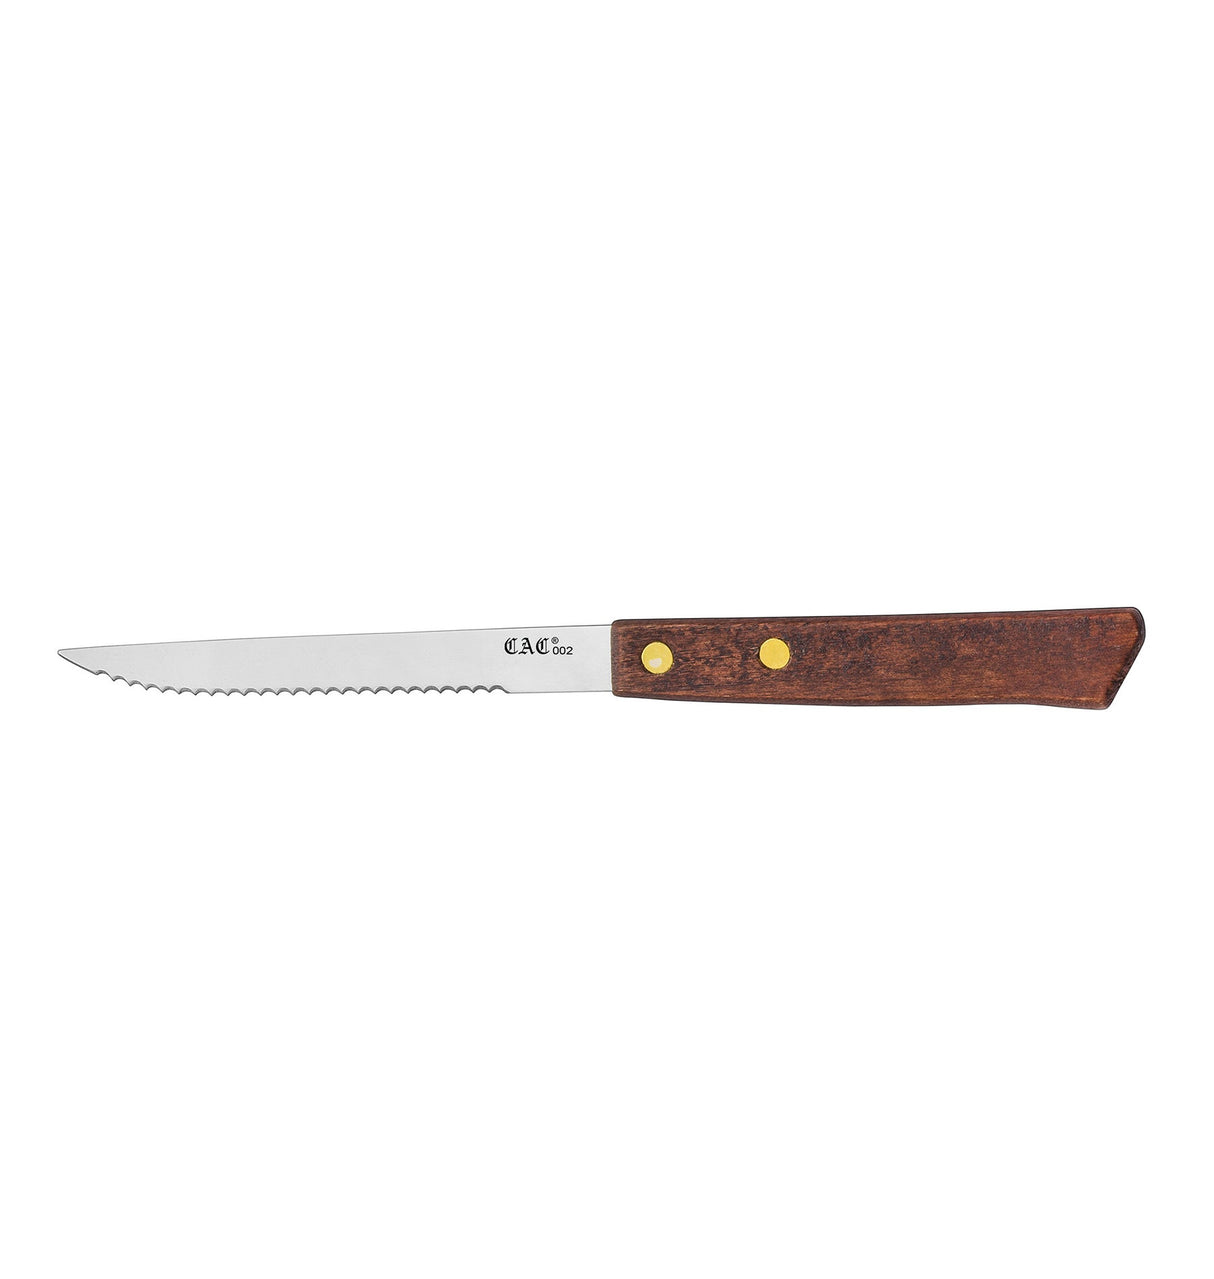 Knife Steak Pointed Tip Wood Hdl 4"